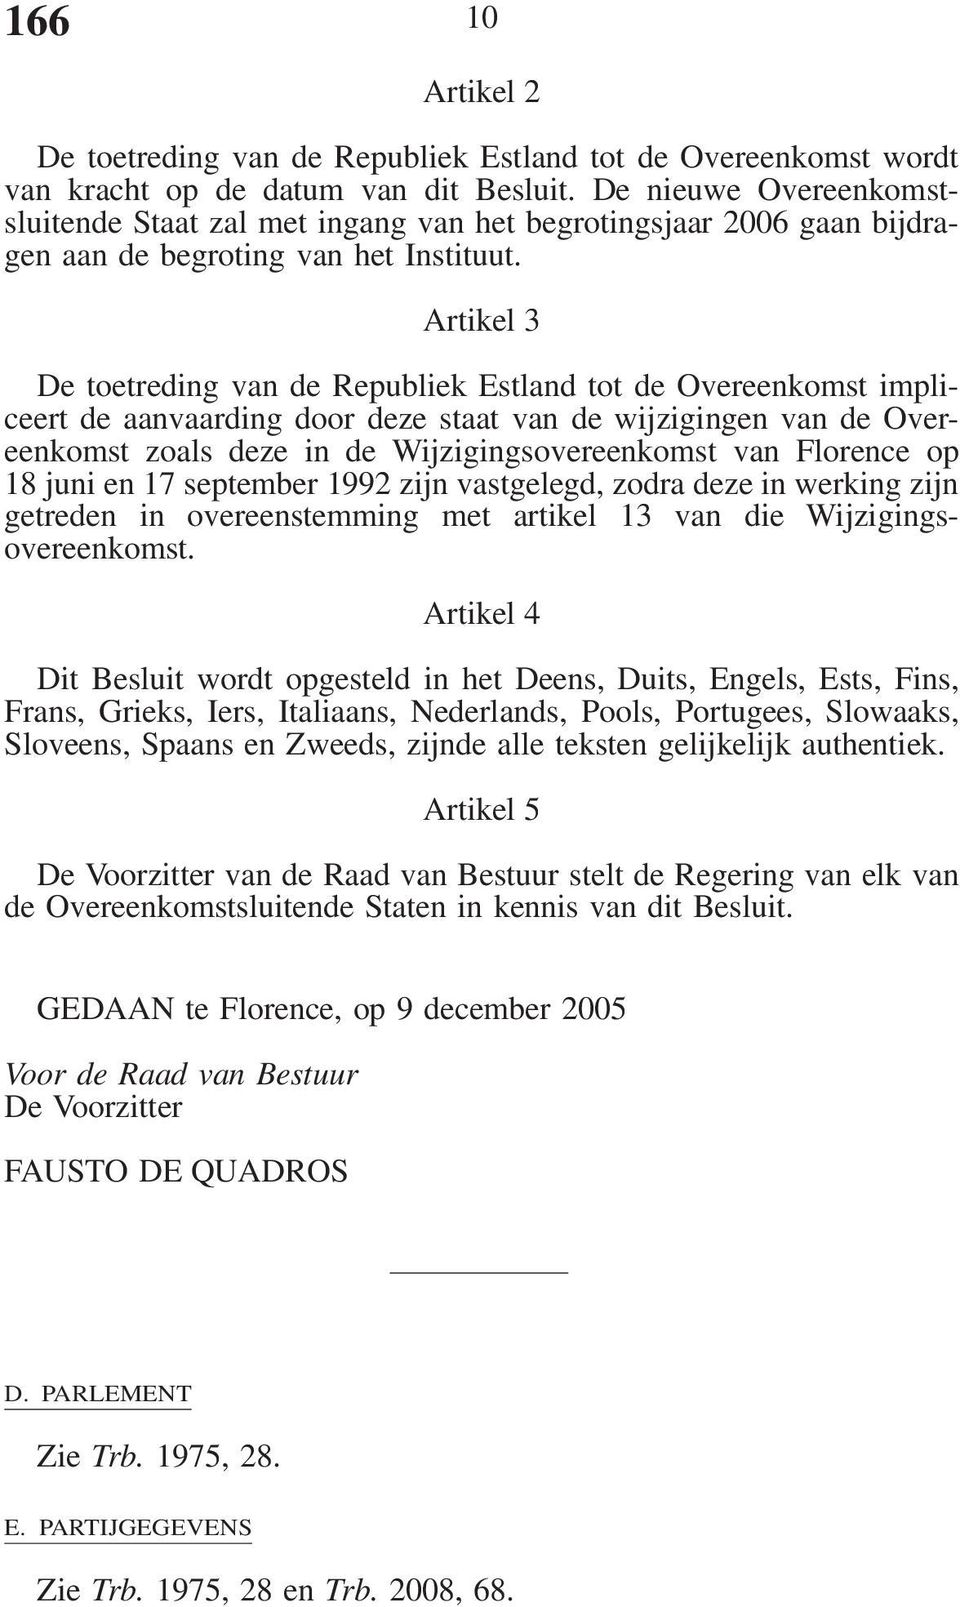 Artikel 3 De toetreding van de Republiek Estland tot de Overeenkomst impliceert de aanvaarding door deze staat van de wijzigingen van de Overeenkomst zoals deze in de Wijzigingsovereenkomst van